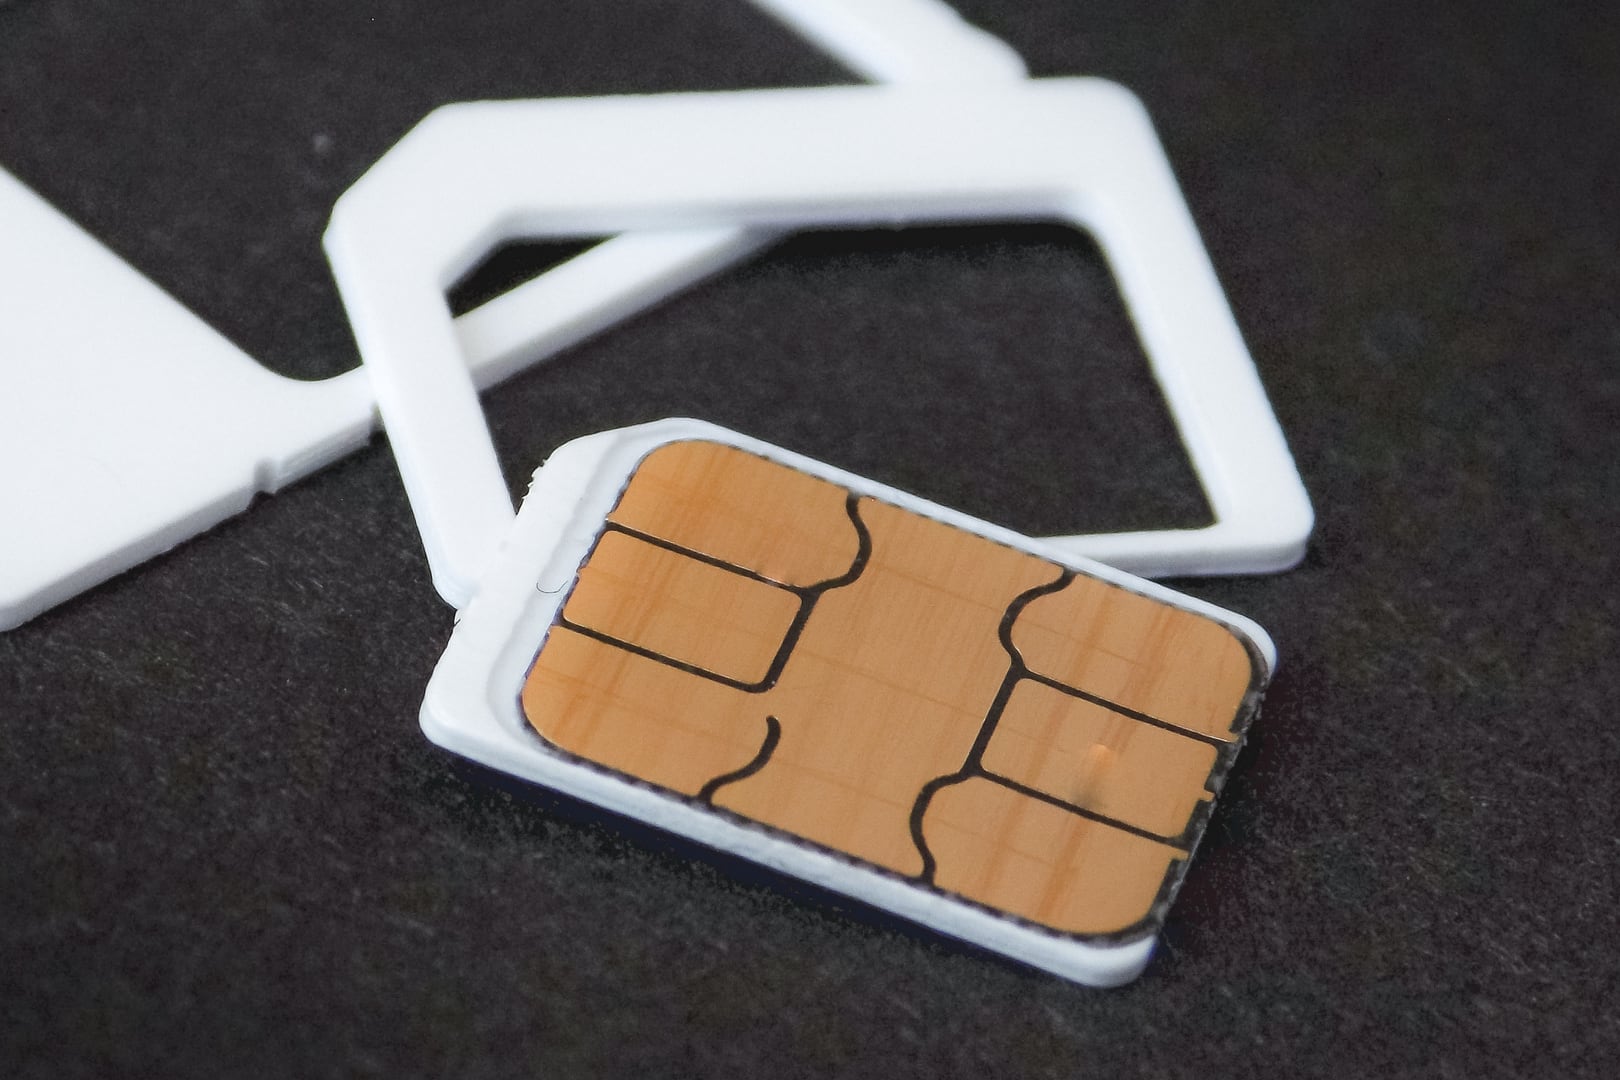 Операторы просят абонентов предоставить актуальные персональные данные для борьбы с серыми SIM-картами